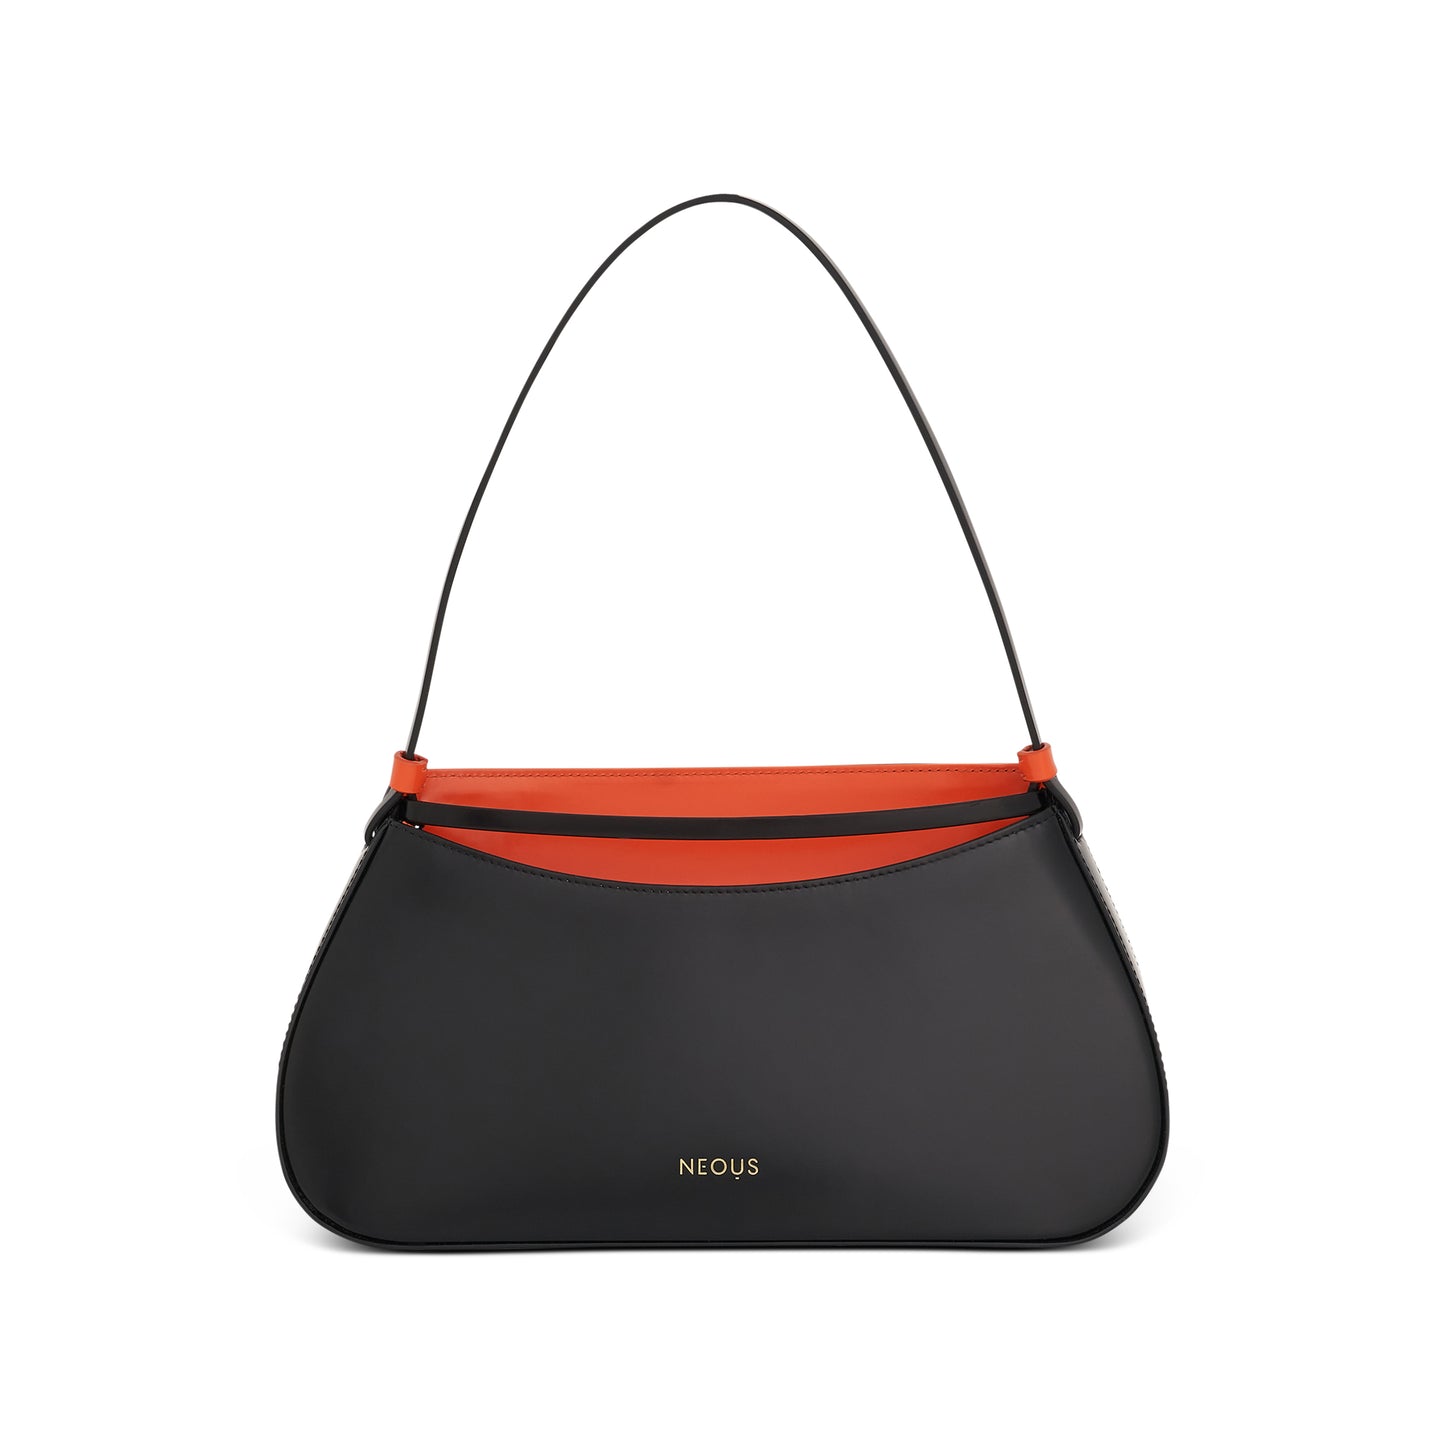 Zeta Baguette Bag in Black/Orange